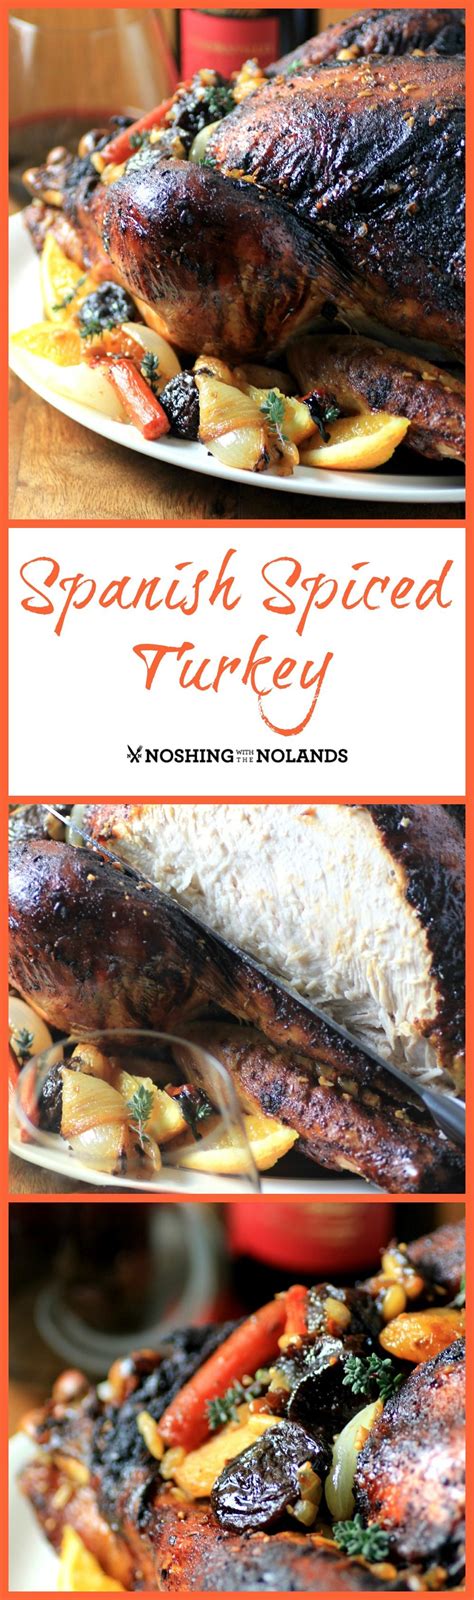 Spanish Spiced Turkey | Turkey spices, Turkey dishes ...